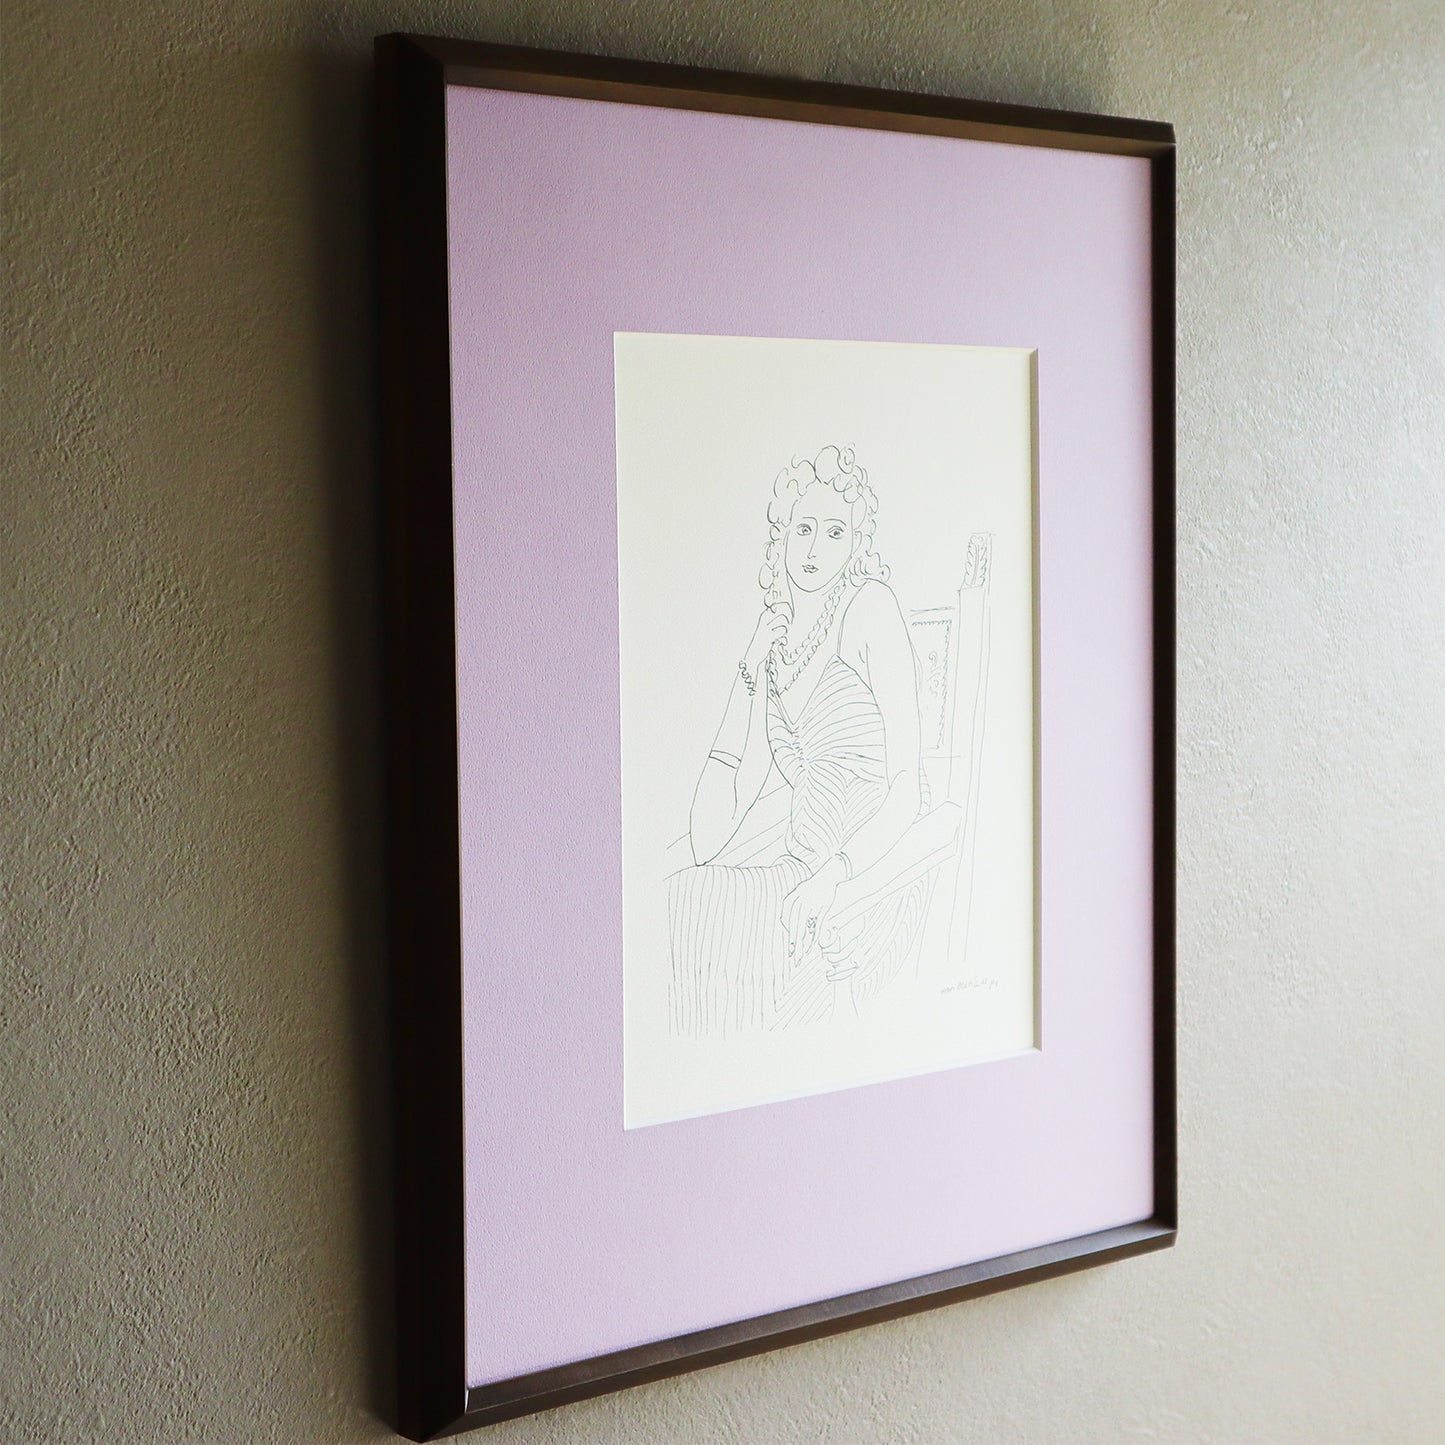 アンリ・マティス 「線画 1942年。“テーマとバリエーション 1943年デッサン”より」アートポスター（フレーム付き） / Henri Matisse “Pen drawing 1942 from Dessin / Thèmes et variations, 1943.” Art Frame